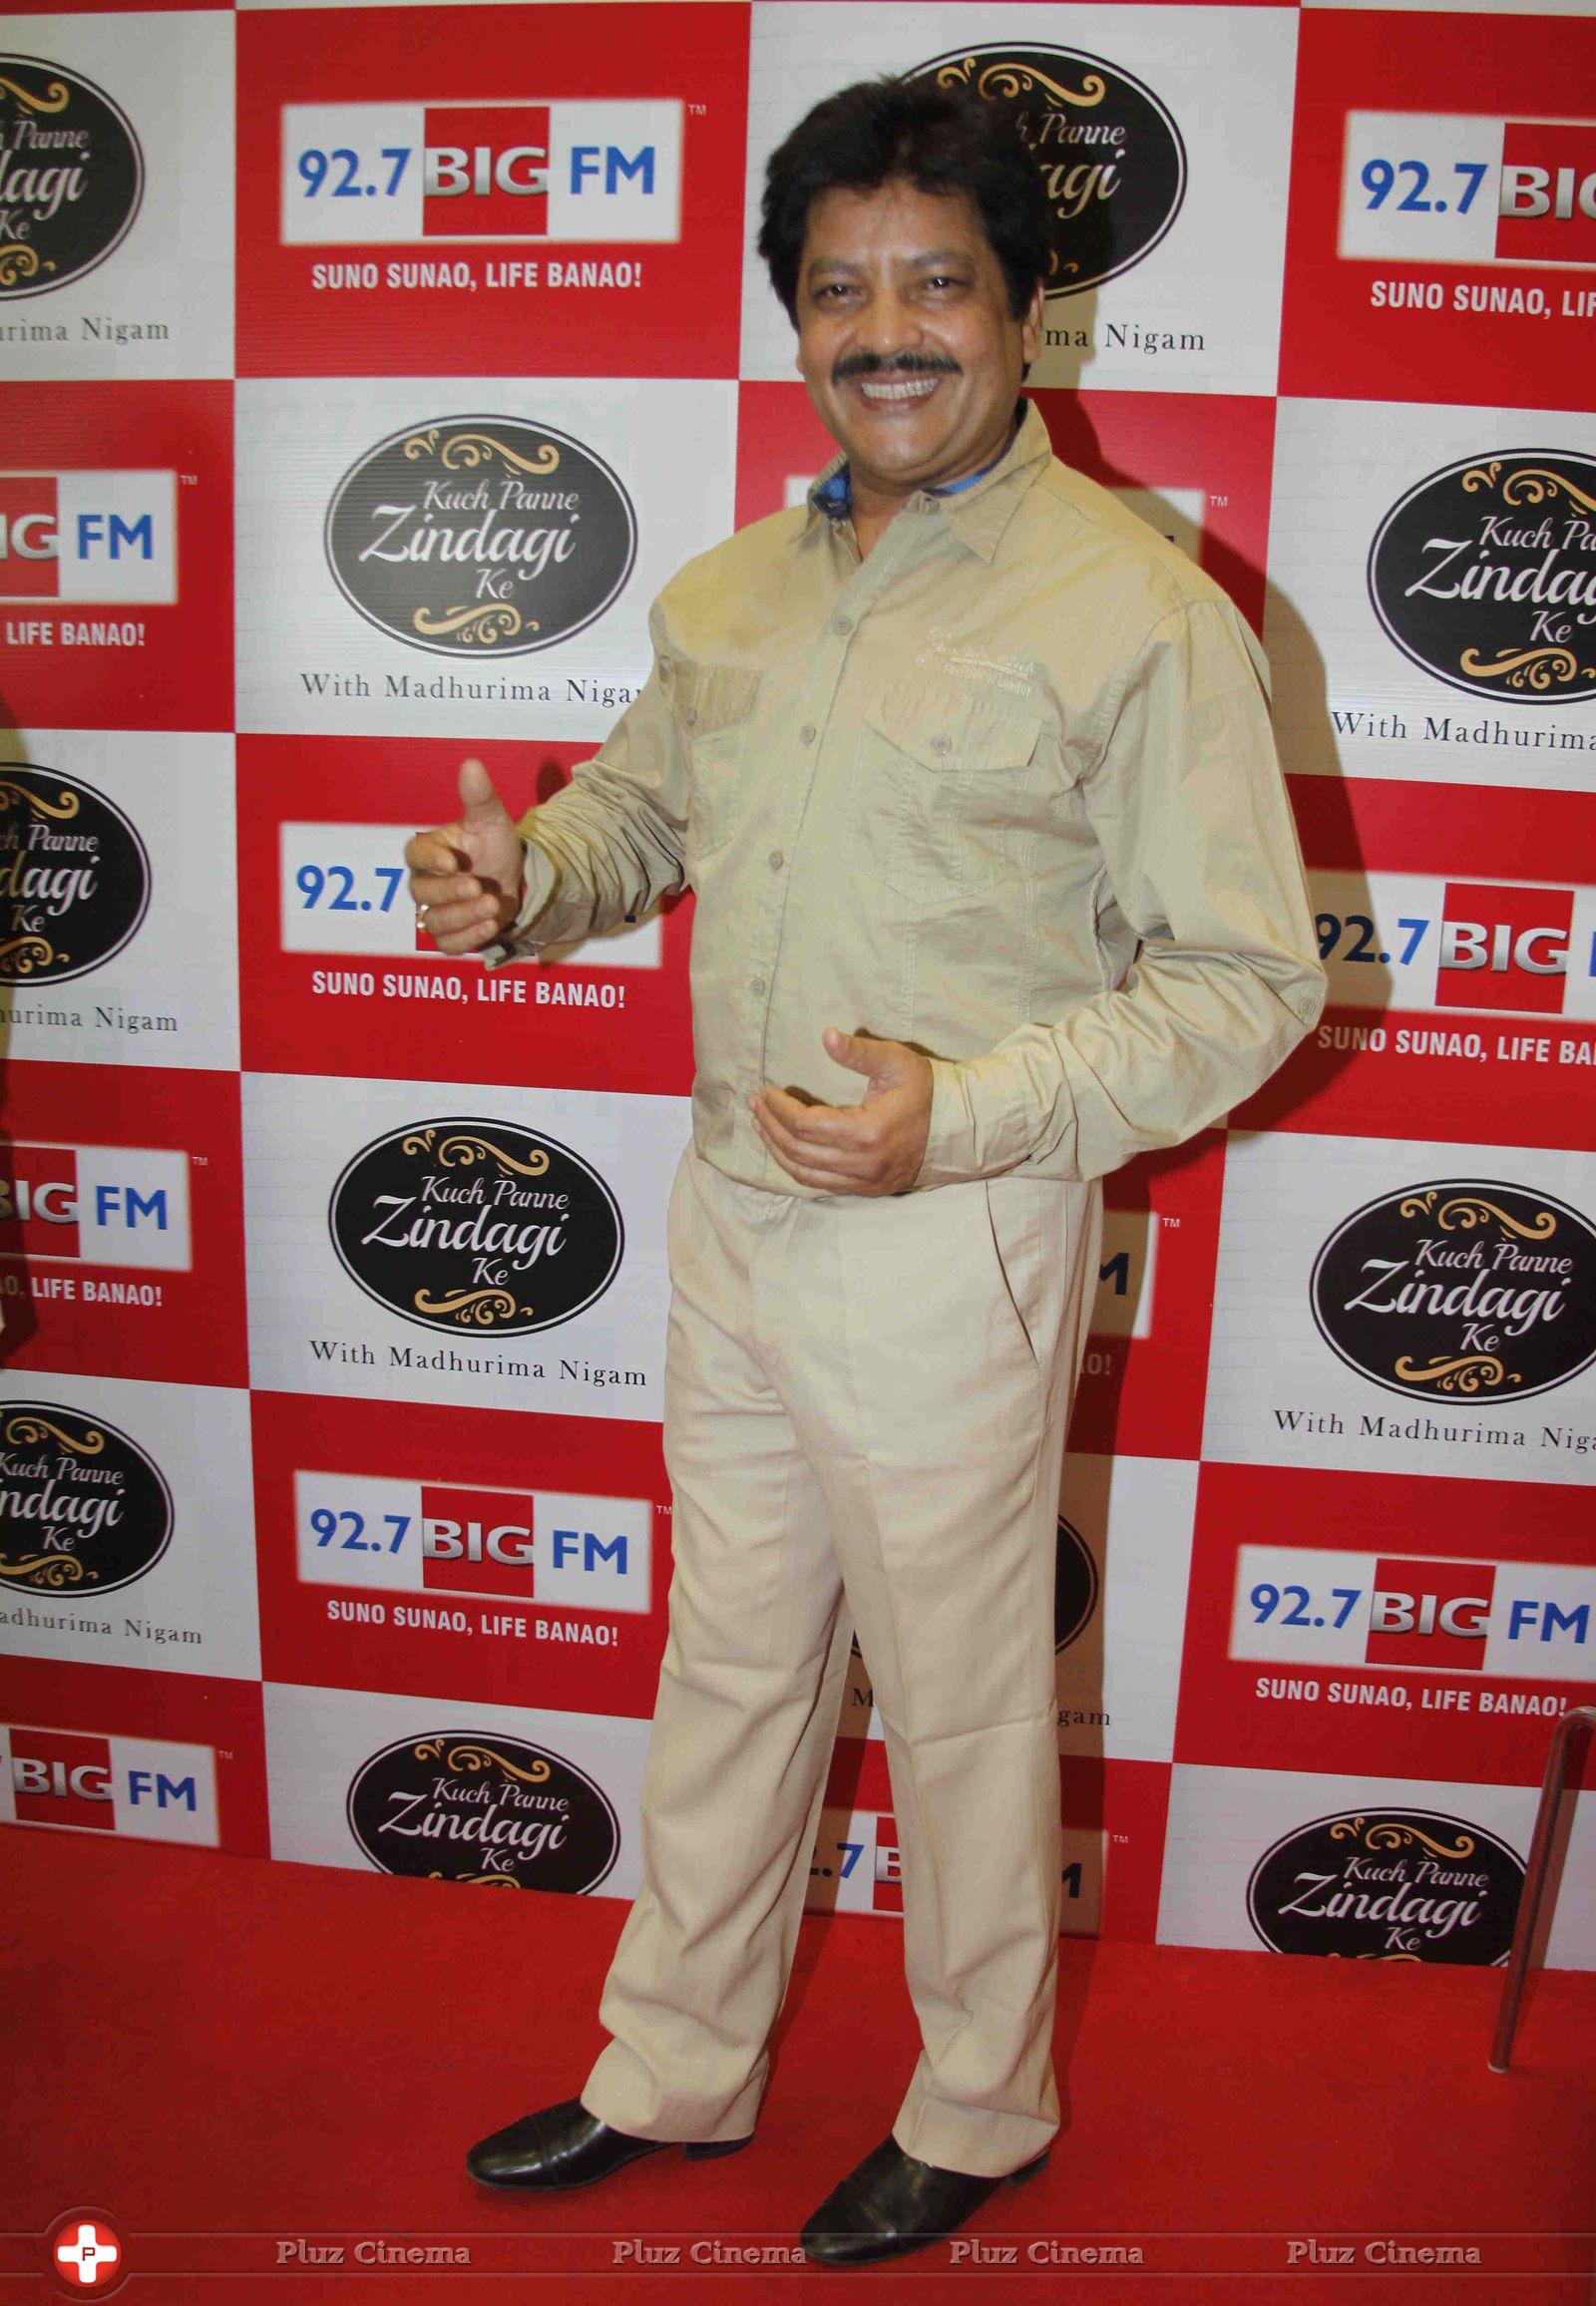 Udit Narayan - Celebration of 92.7 BIG FM's new radio show Kuch Panne Zindagi Ke Photos | Picture 690457